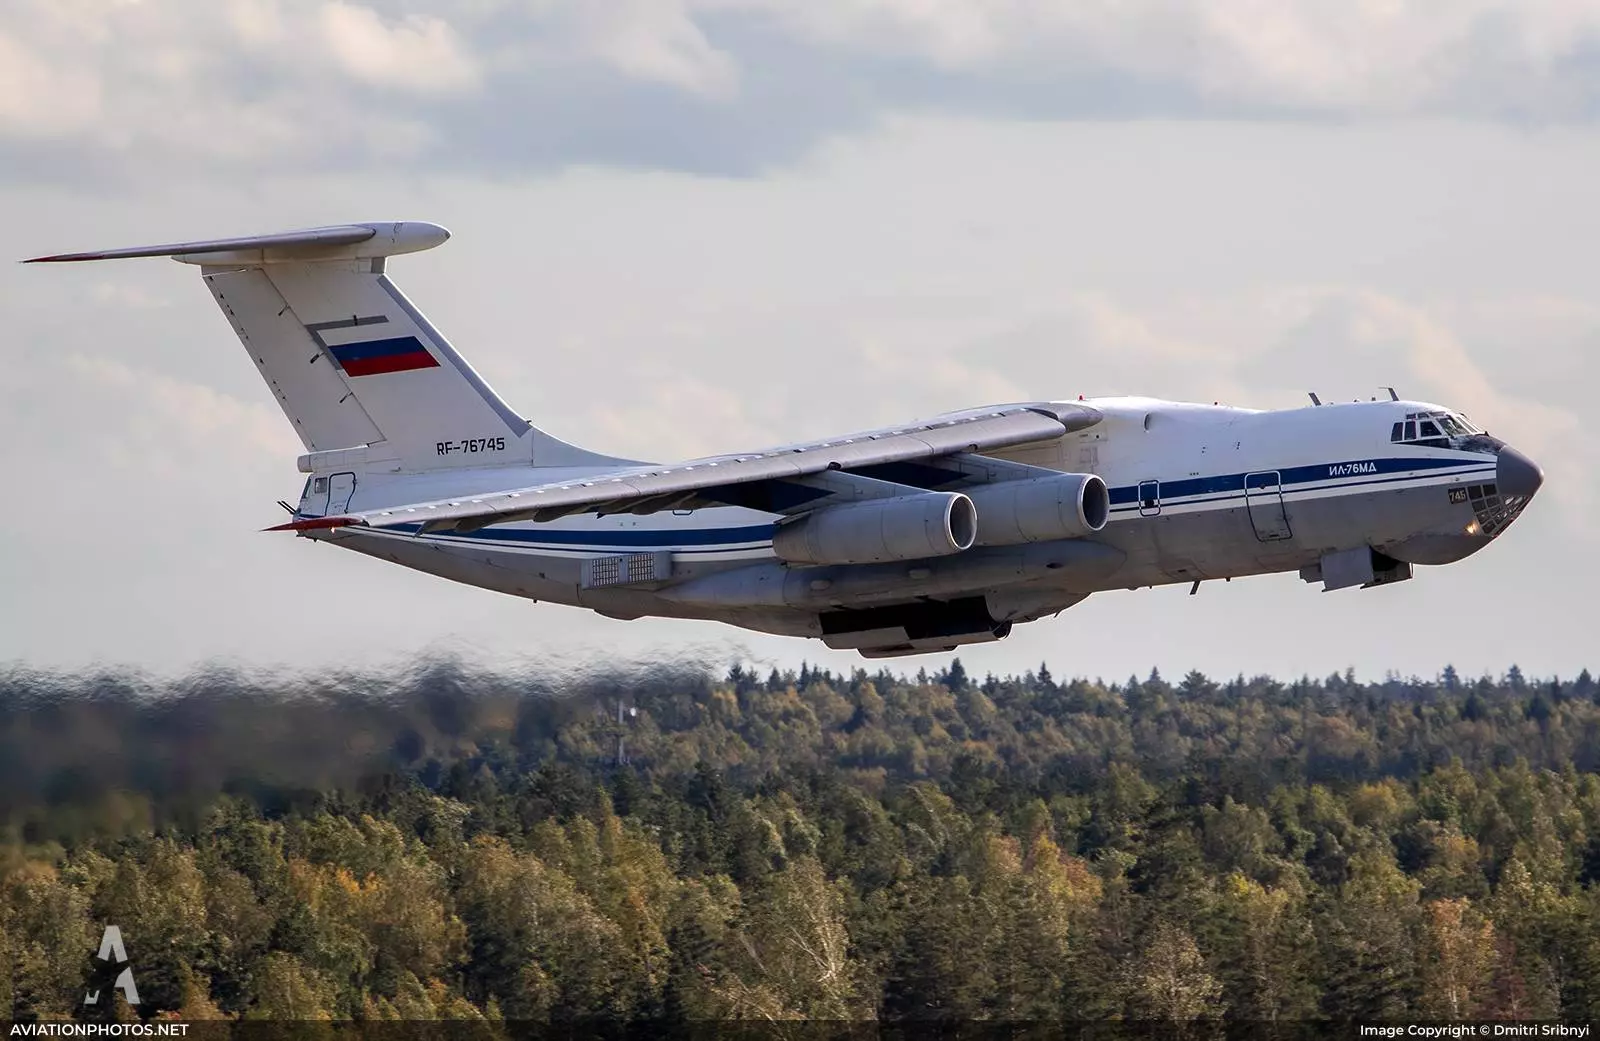 Эпохальная машина: каковы перспективы российского военно-транспортного самолёта ил-76 — рт на русском